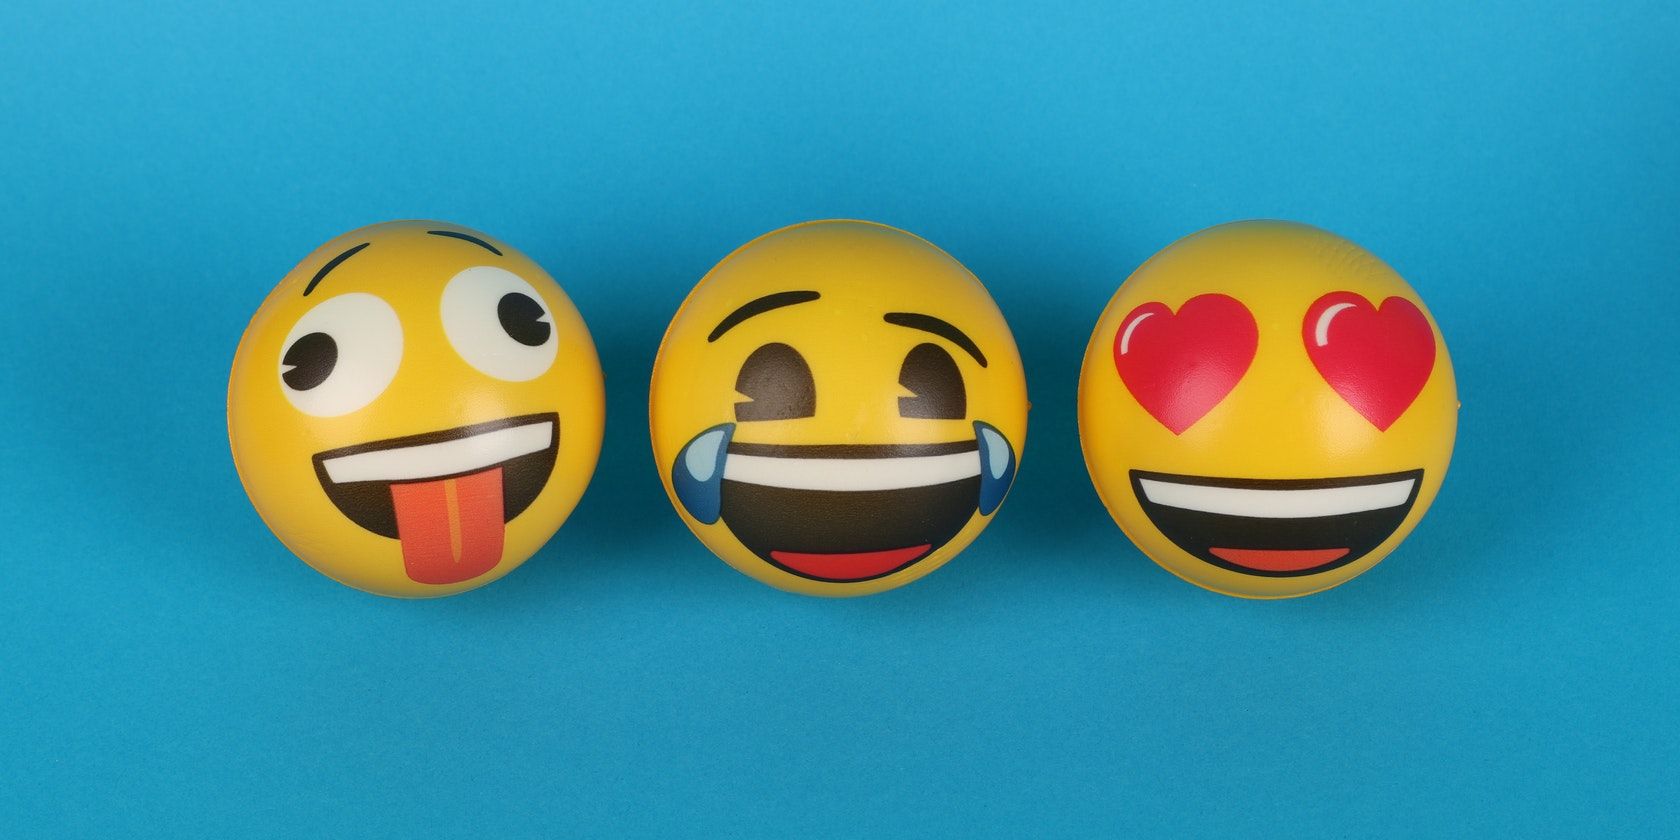 three emoji balls side by side